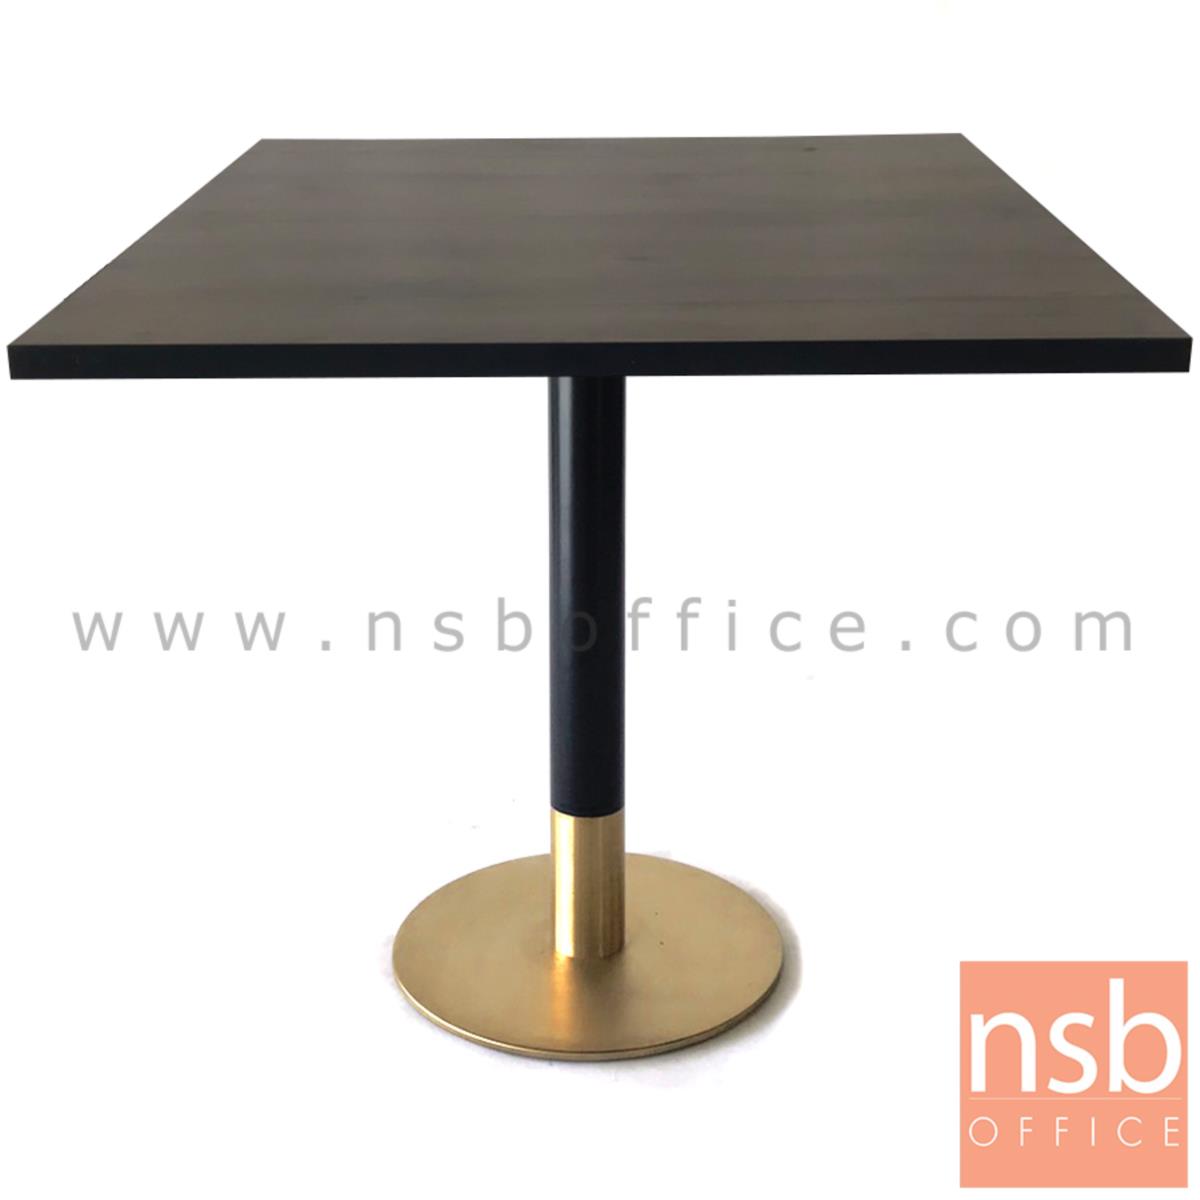 ขาโต๊ะบาร์จานกลม (สีดำ-ทอง) BLACKGOLD  